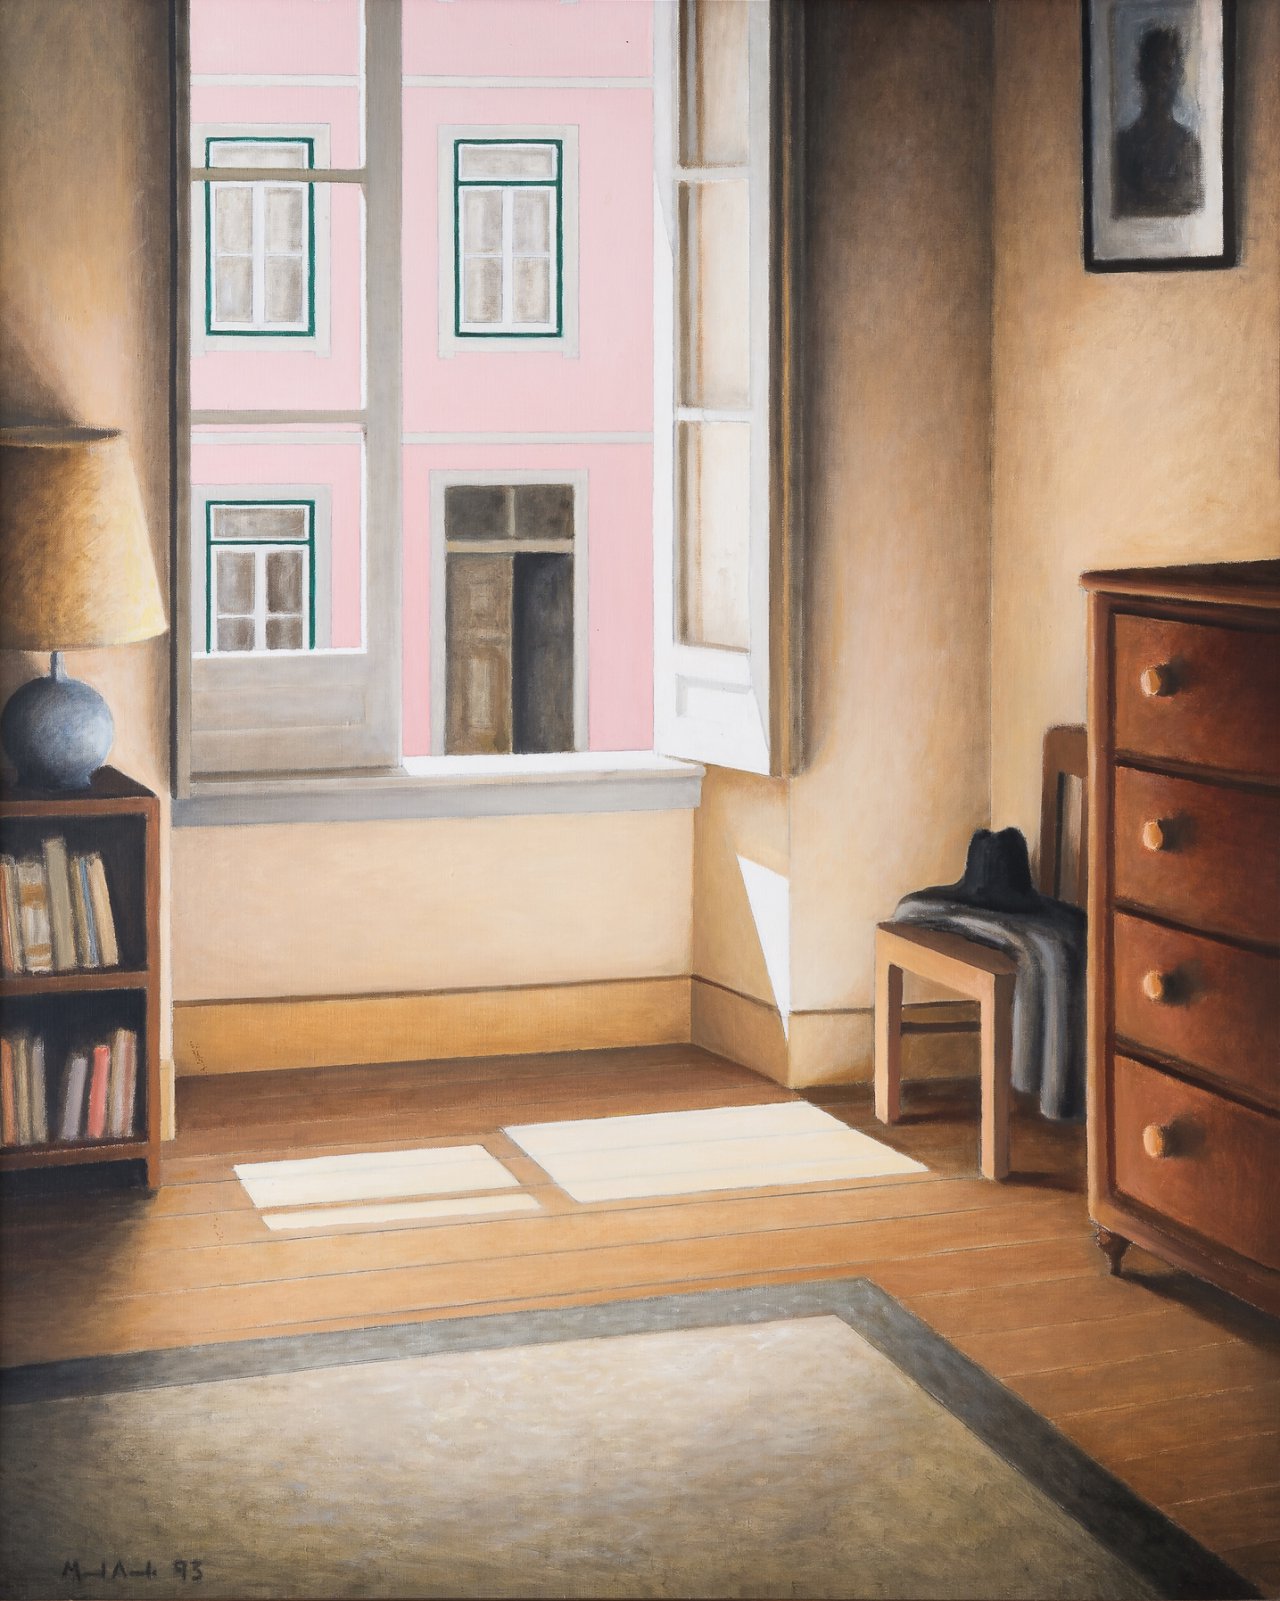 Fernando Pessoa’s Room I (study)